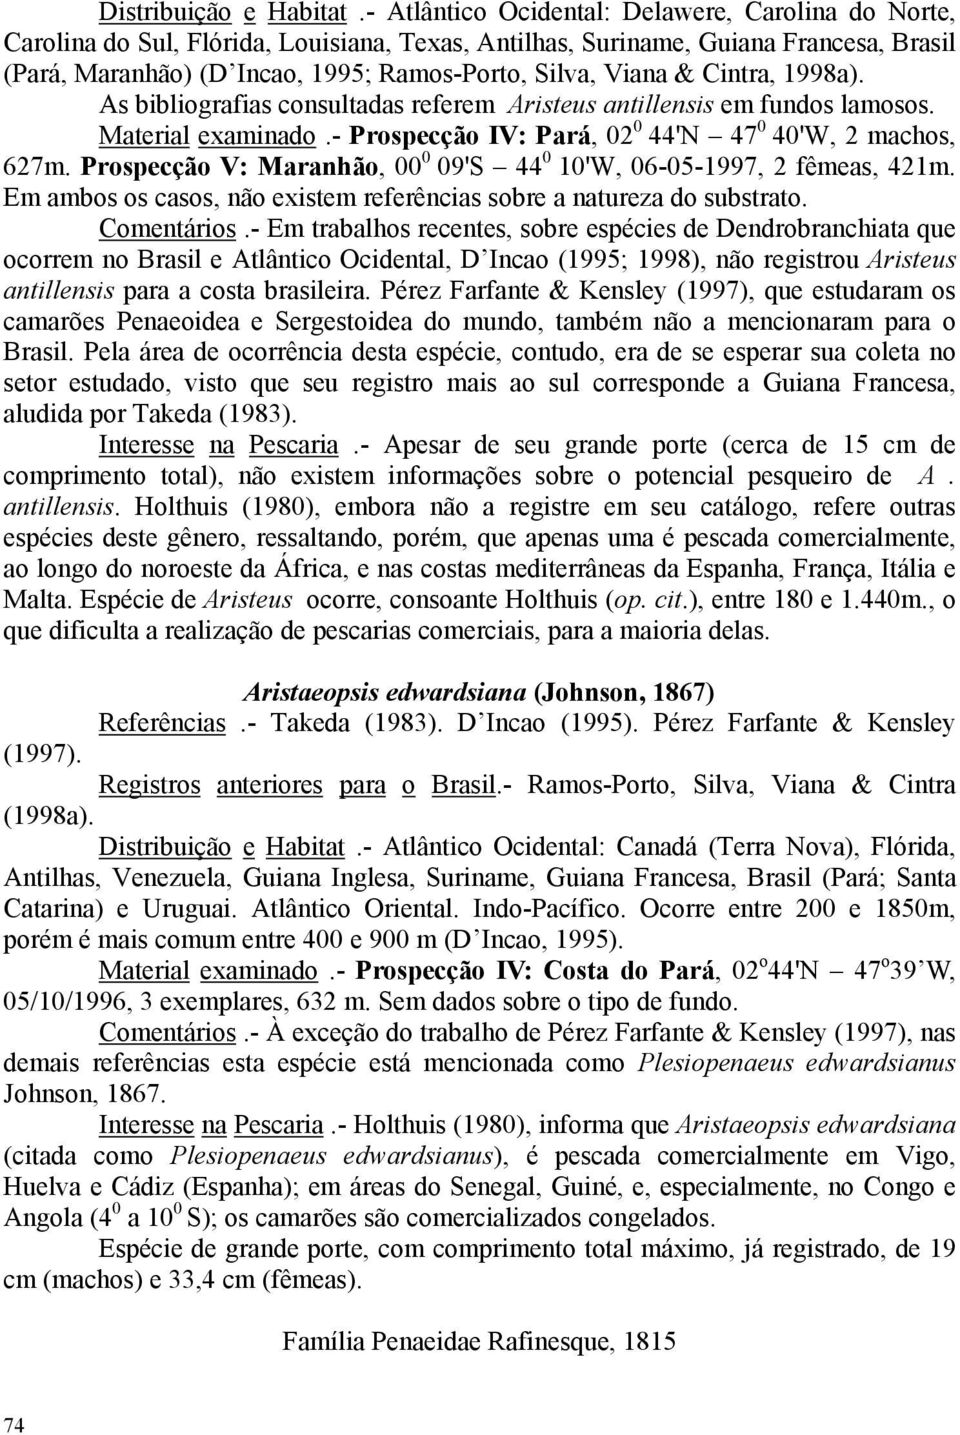 & Cintra, 1998a). As bibliografias consultadas referem Aristeus antillensis em fundos lamosos. Material examinado.- Prospecção IV: Pará, 02 0 44'N 47 0 40'W, 2 machos, 627m.